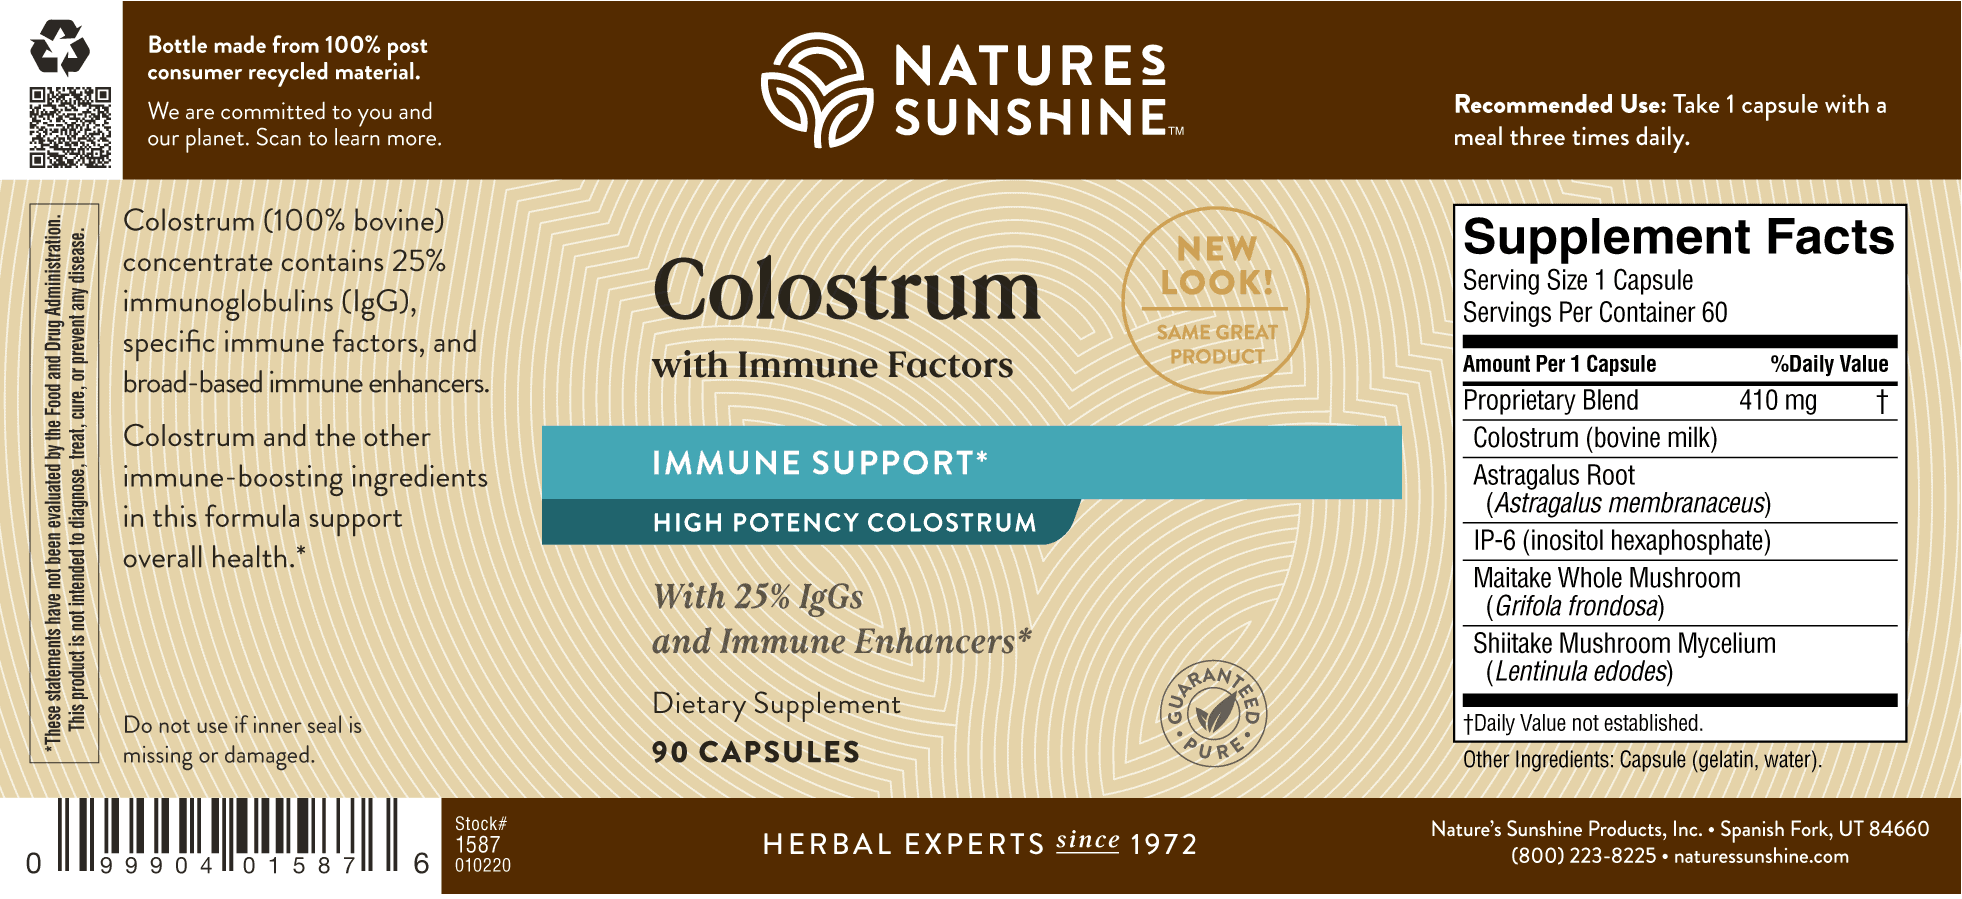 Etiqueta de Nature's Sunshine Colostrum with Immune Factors